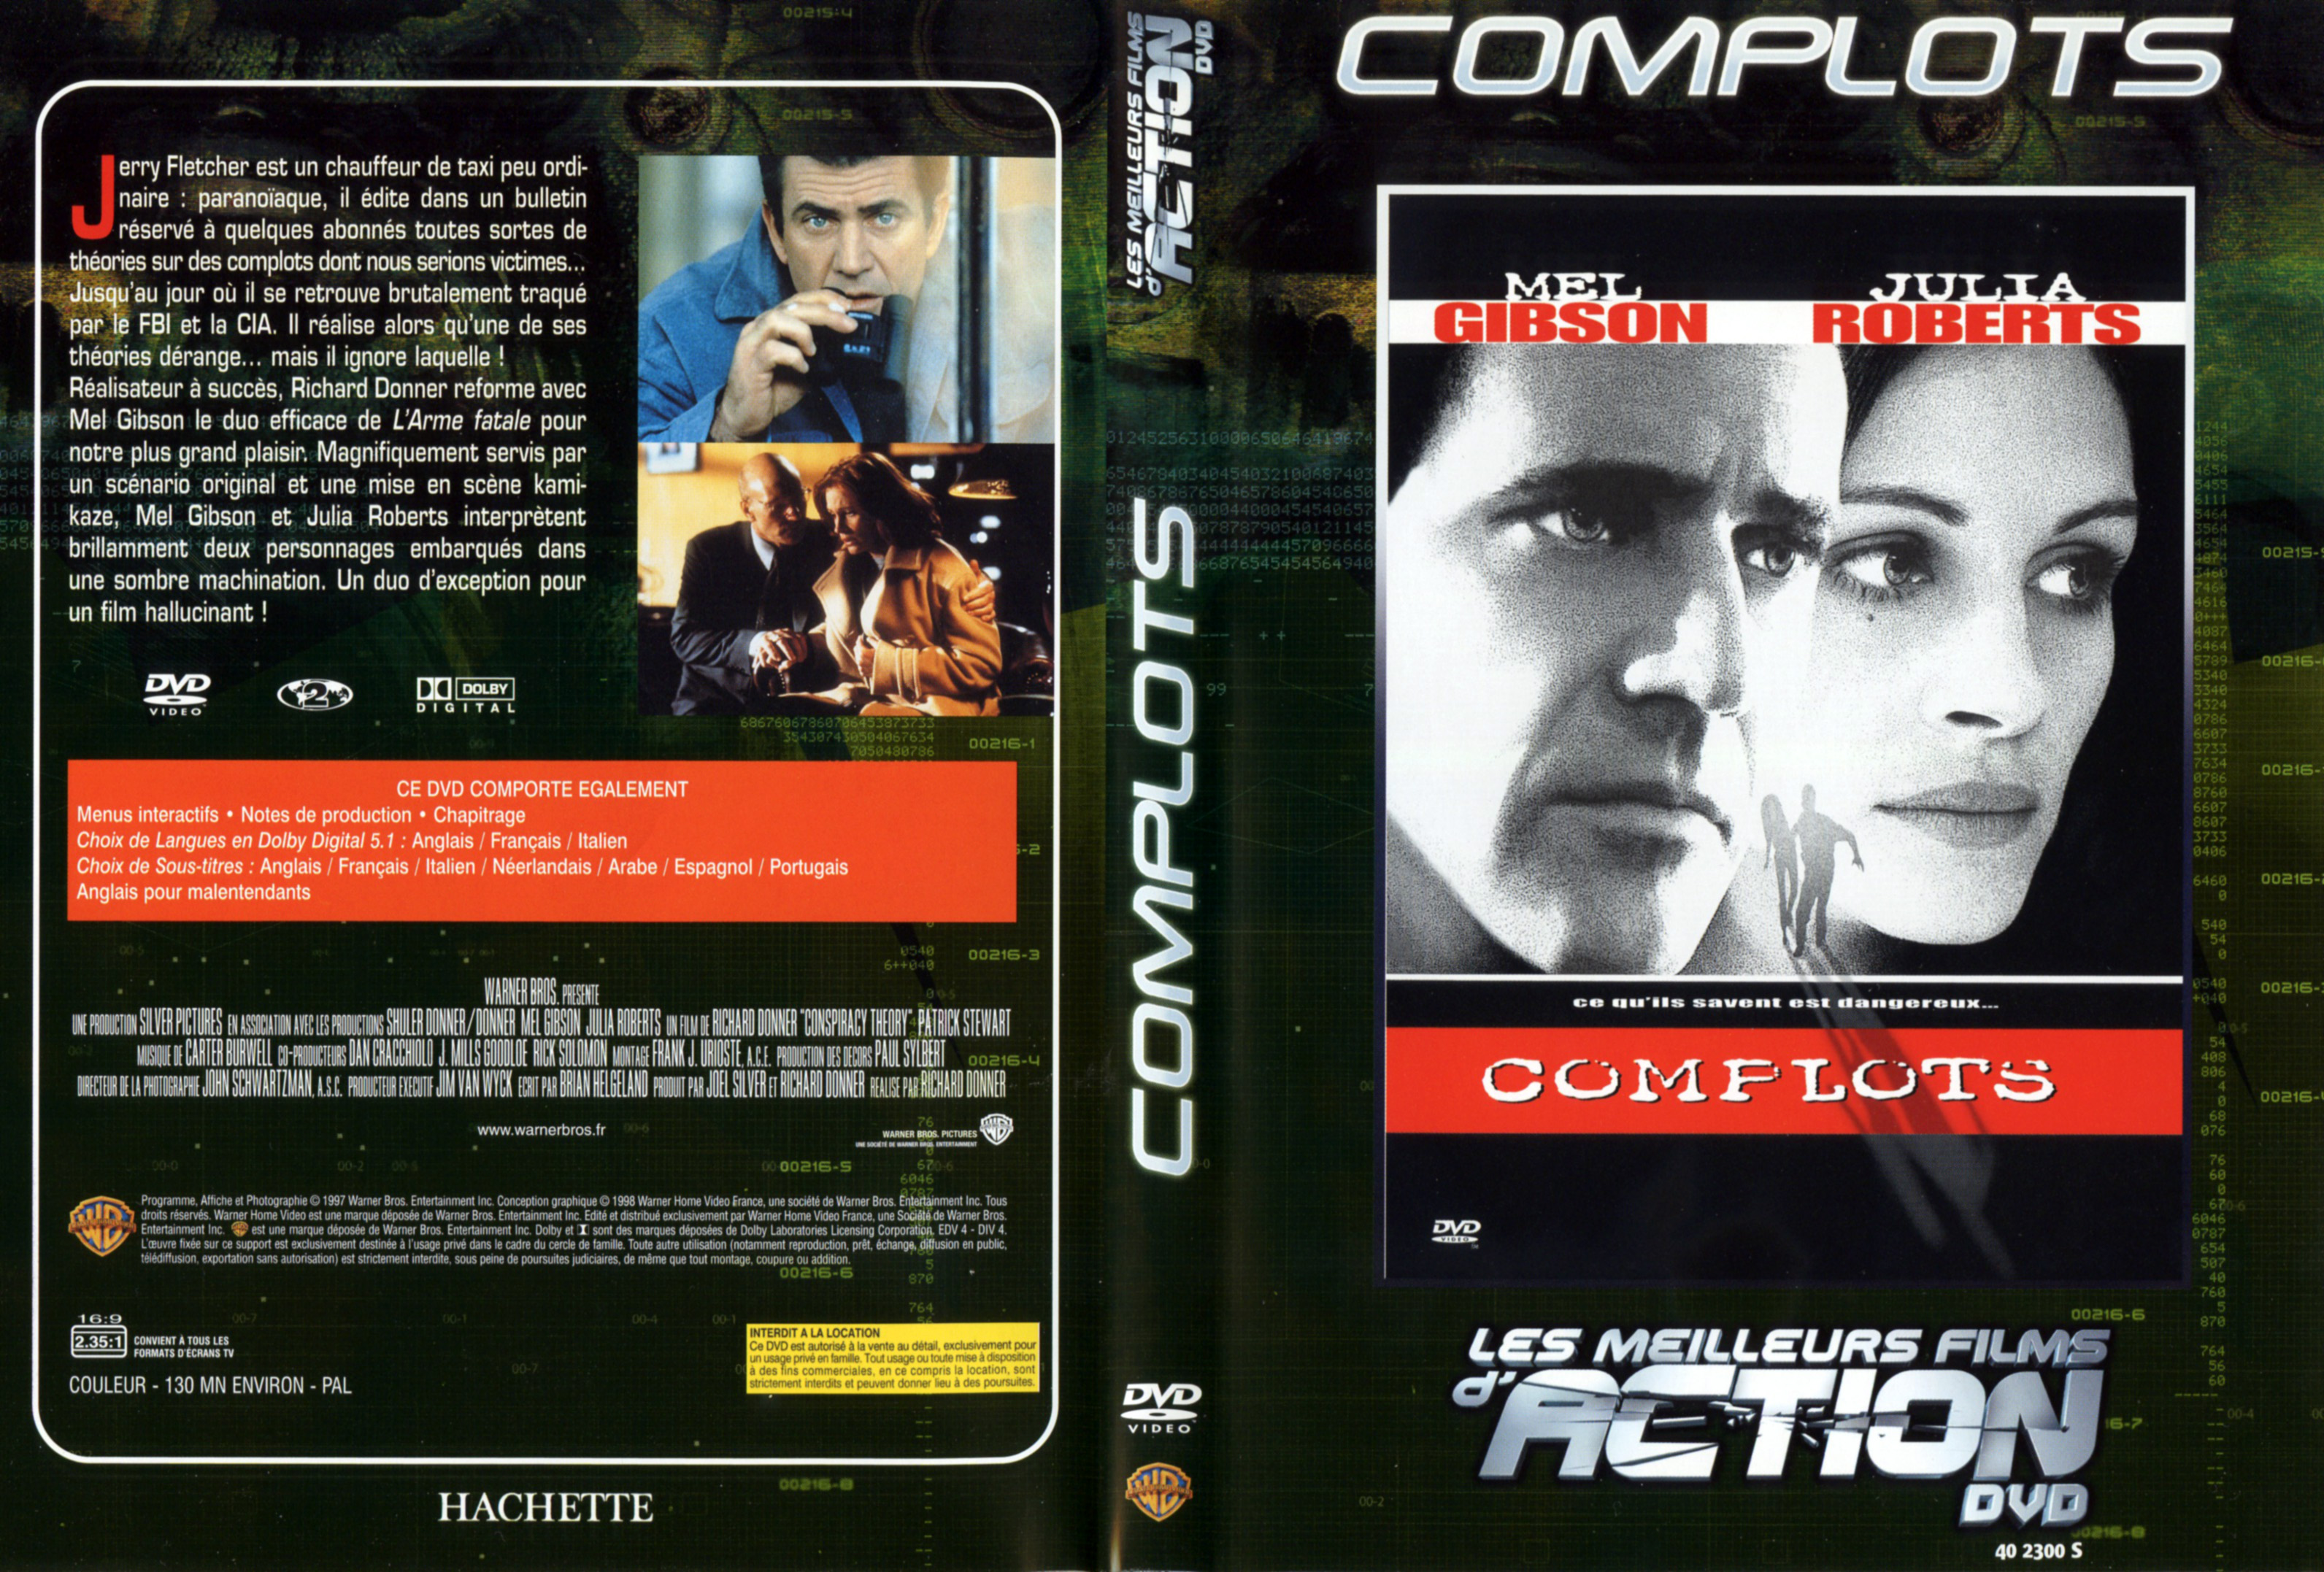 Jaquette DVD Complots v2